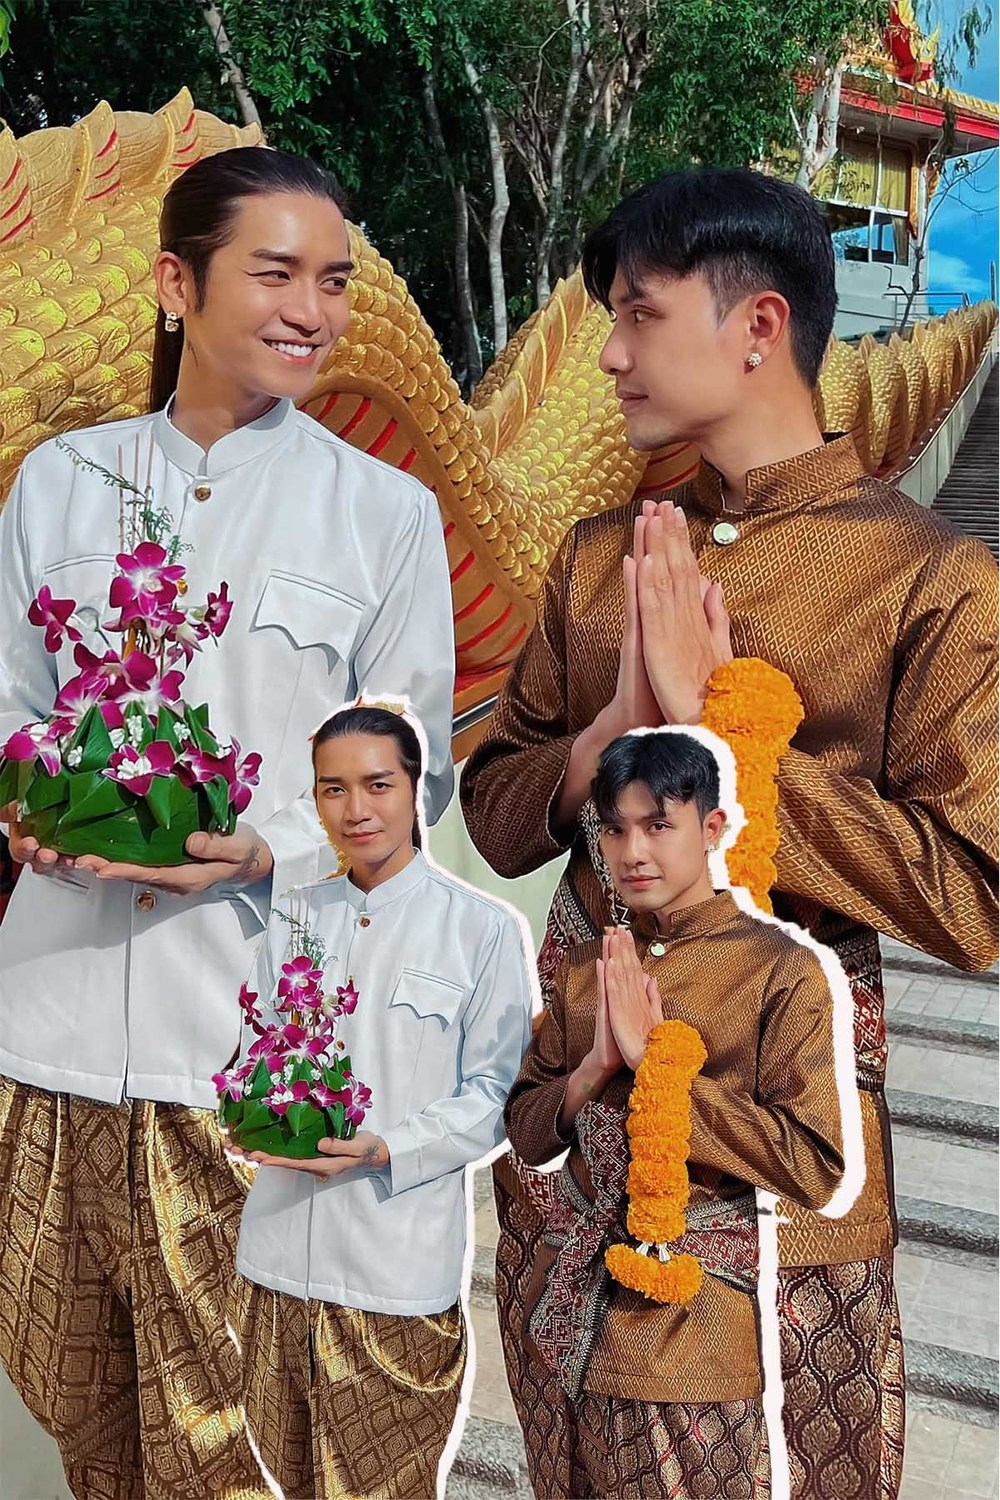  
BB Trần và Quang Lâm cùng du lịch Thái Lan vào đúng Pride Month - Tháng Tự hào LGBT. (Ảnh: Facebook Trần Bảo Bảo) - Tin sao Viet - Tin tuc sao Viet - Scandal sao Viet - Tin tuc cua Sao - Tin cua Sao